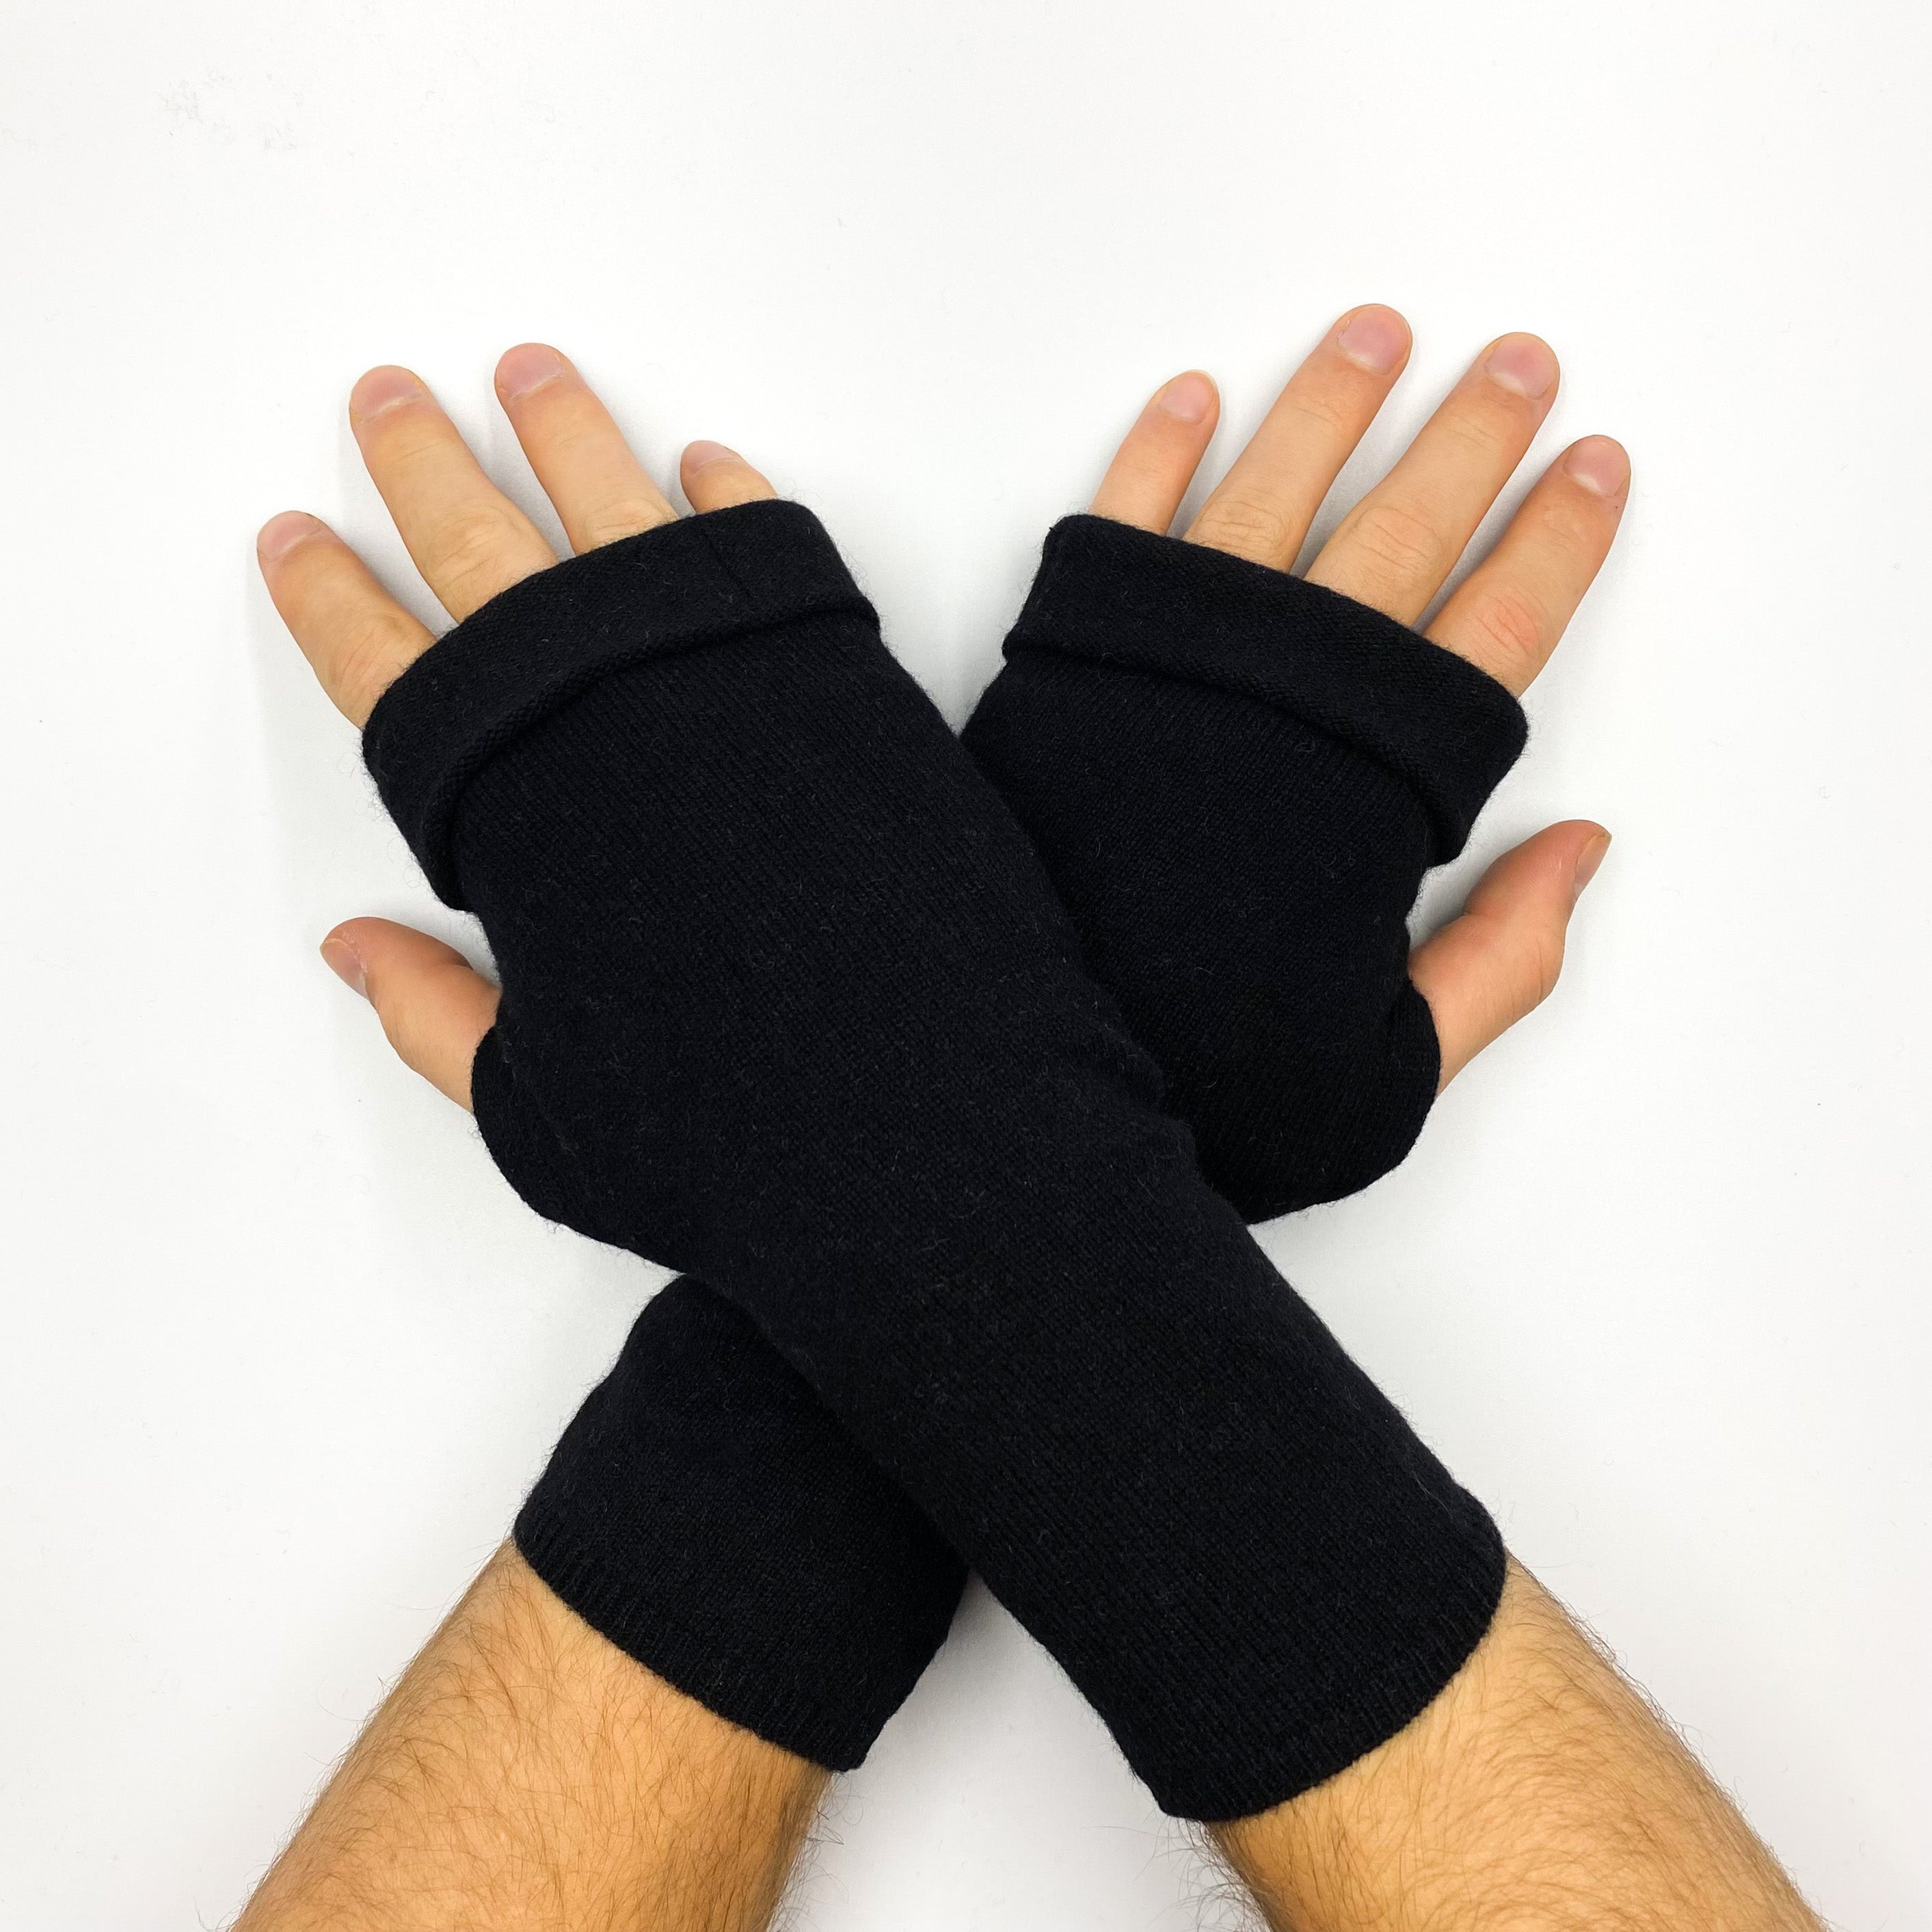 Men’s Black Fingerless Gloves